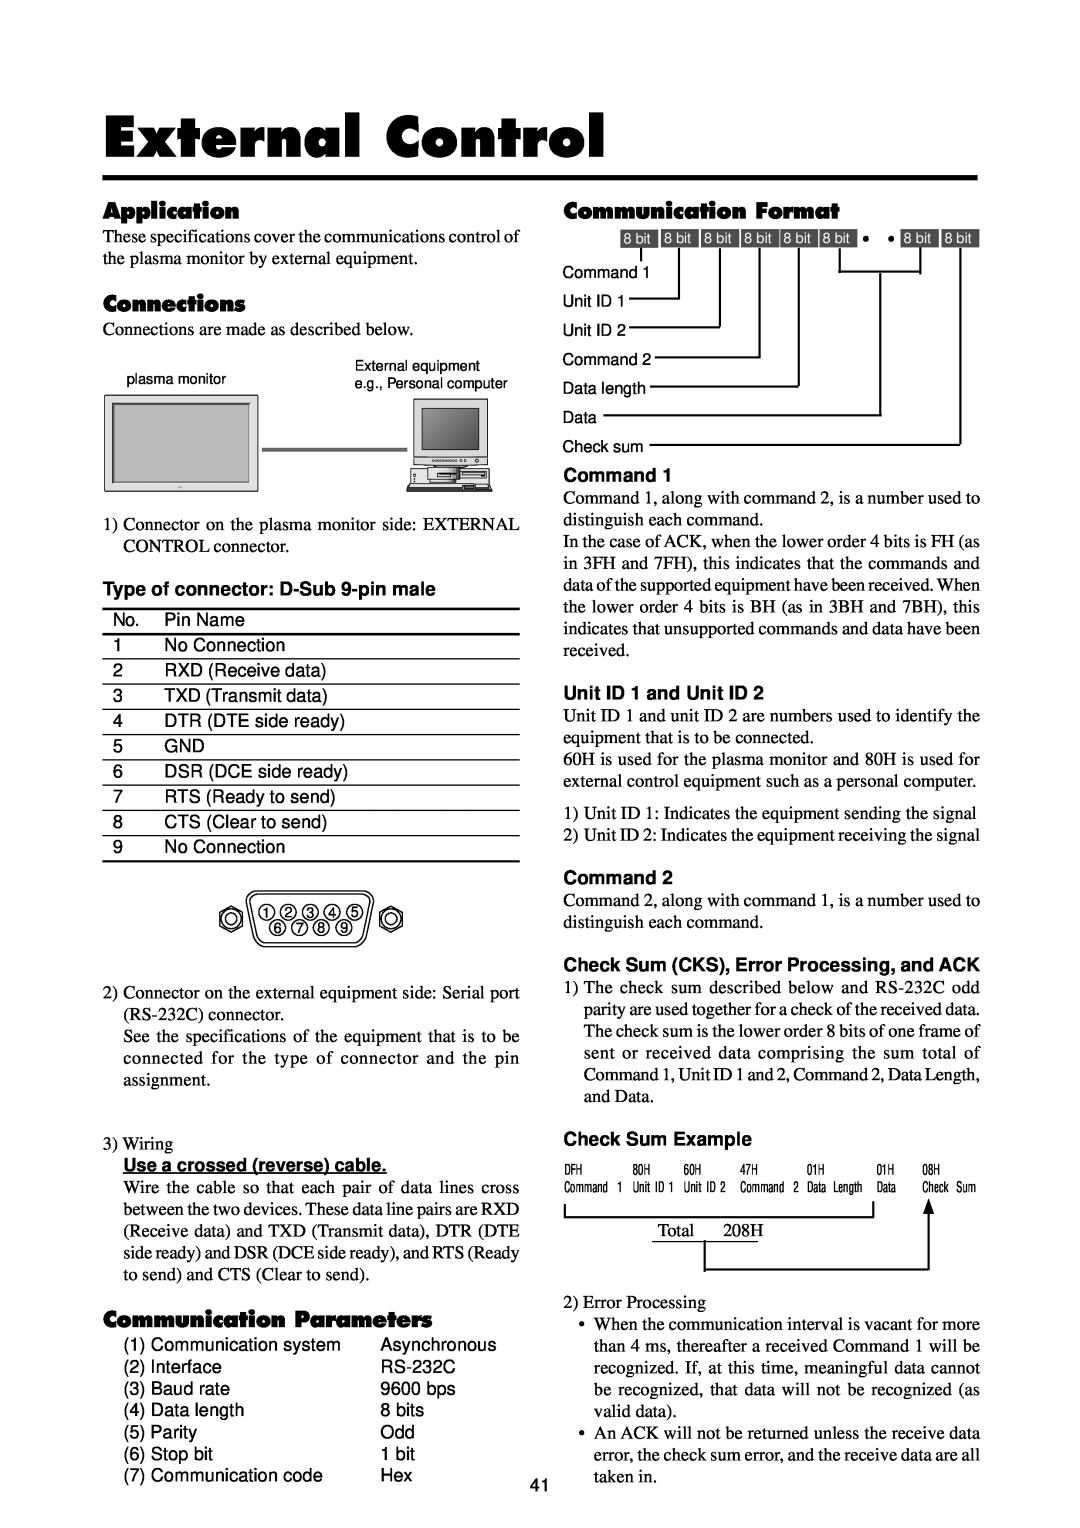 Marantz PD5020D manual External Control, Application, Connections, Communication Format, Communication Parameters, Command 